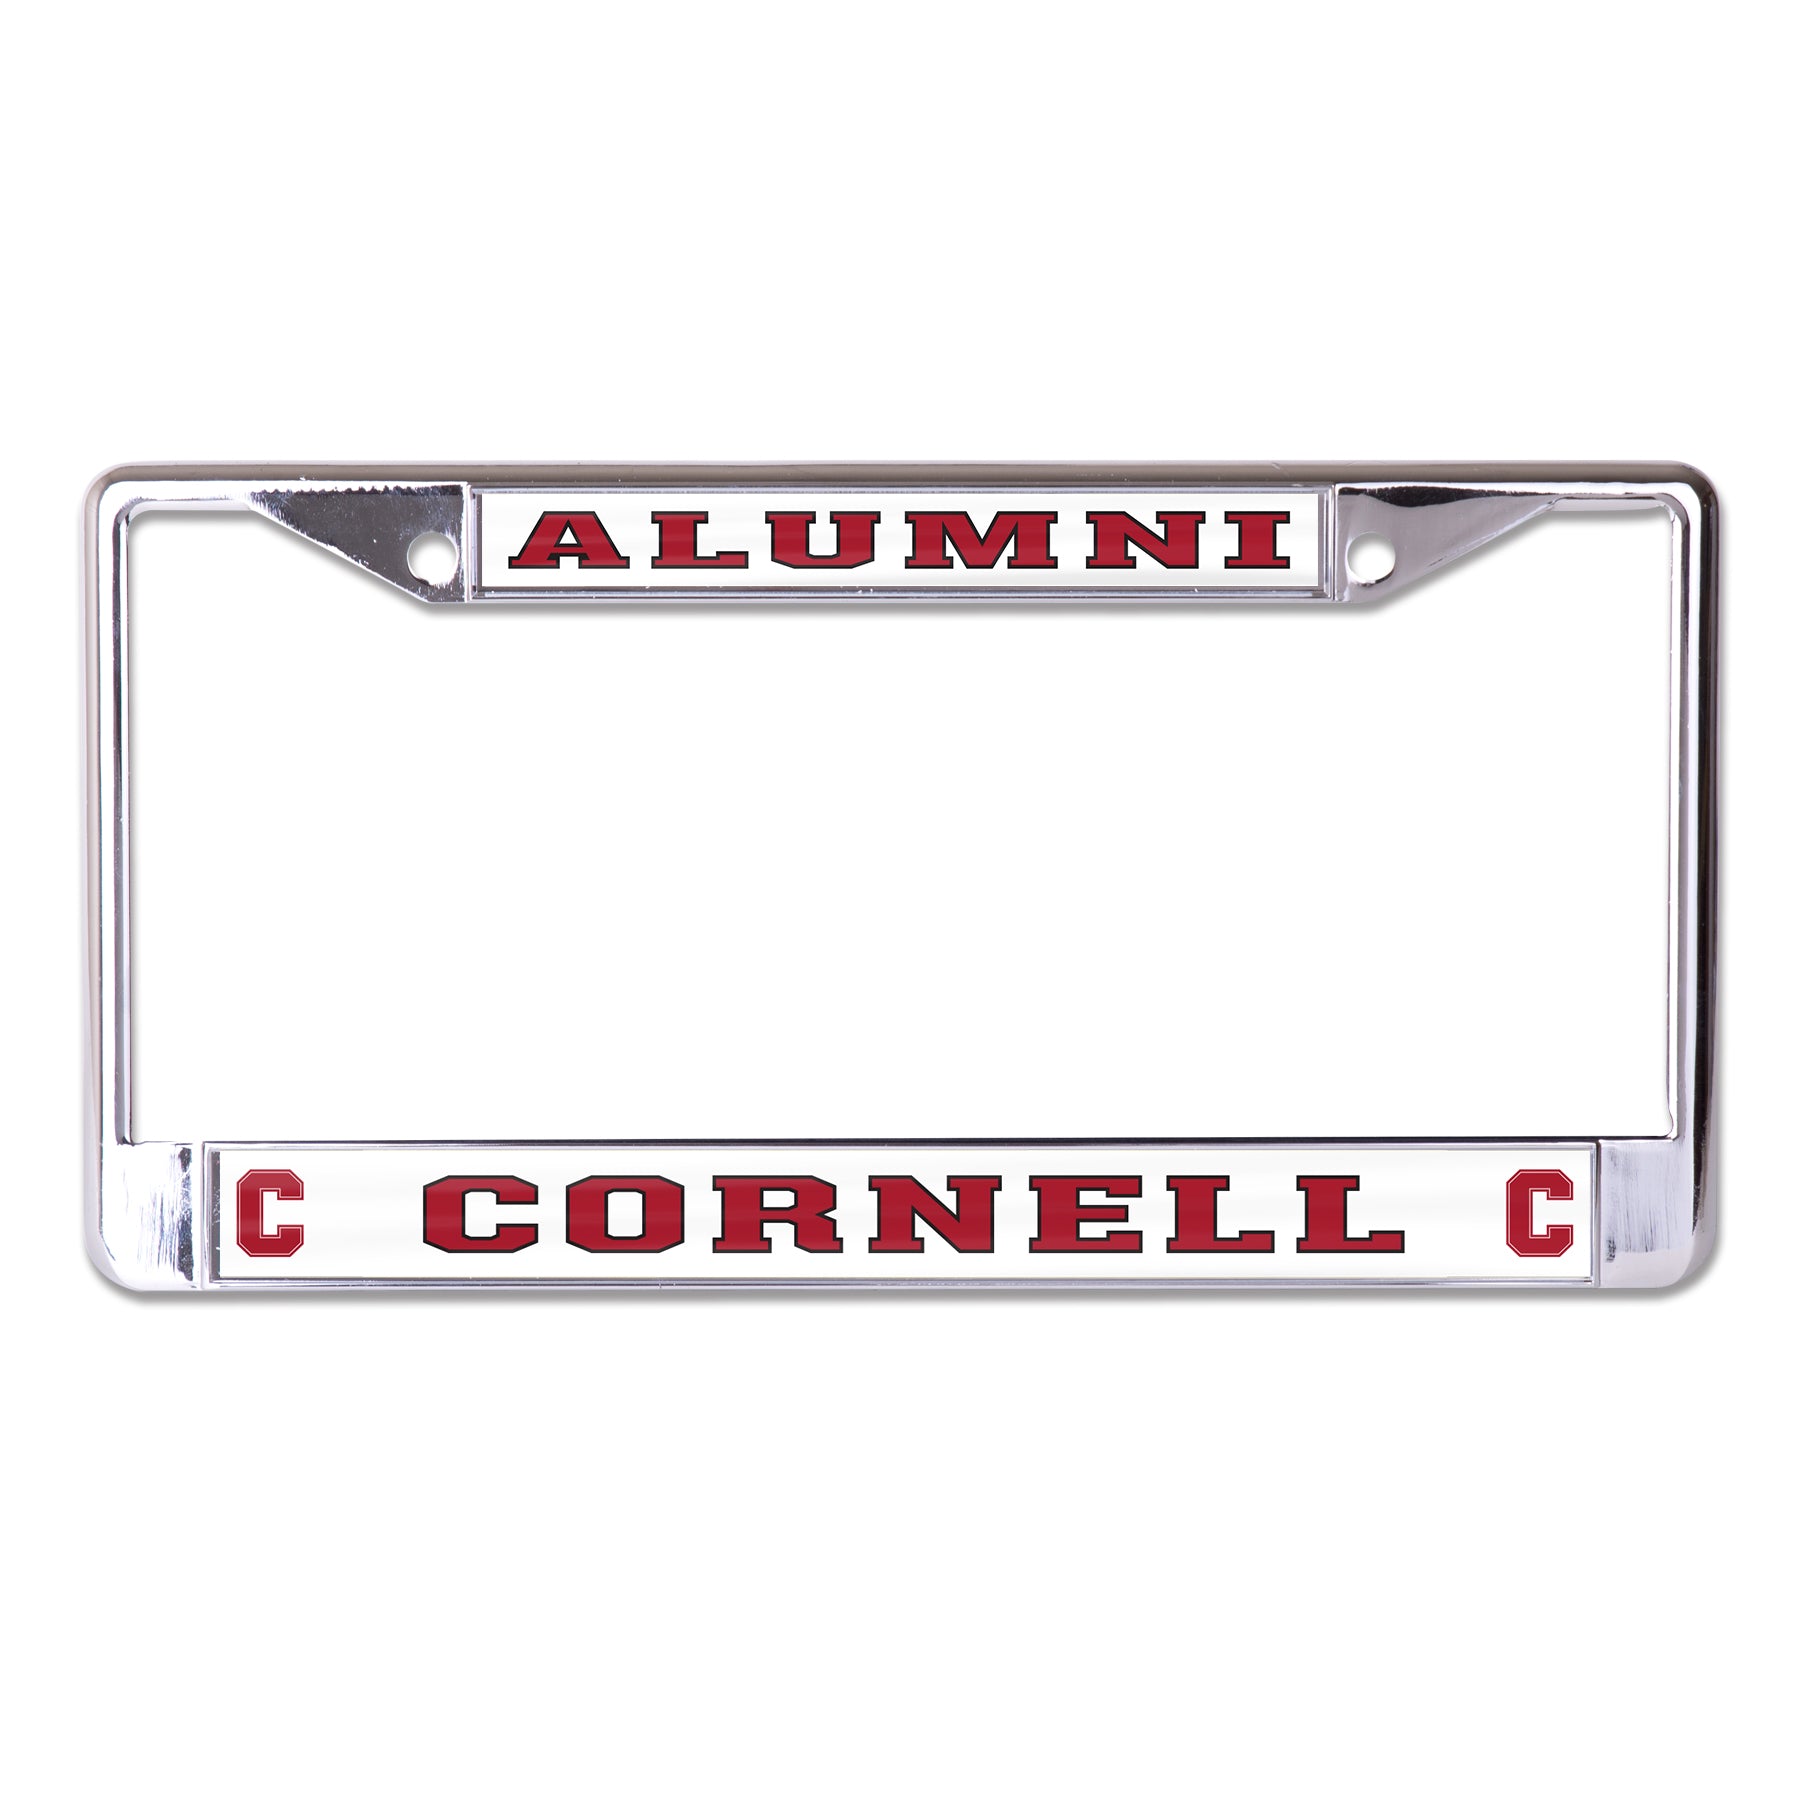 Cornell University Alumni License Plate Frame